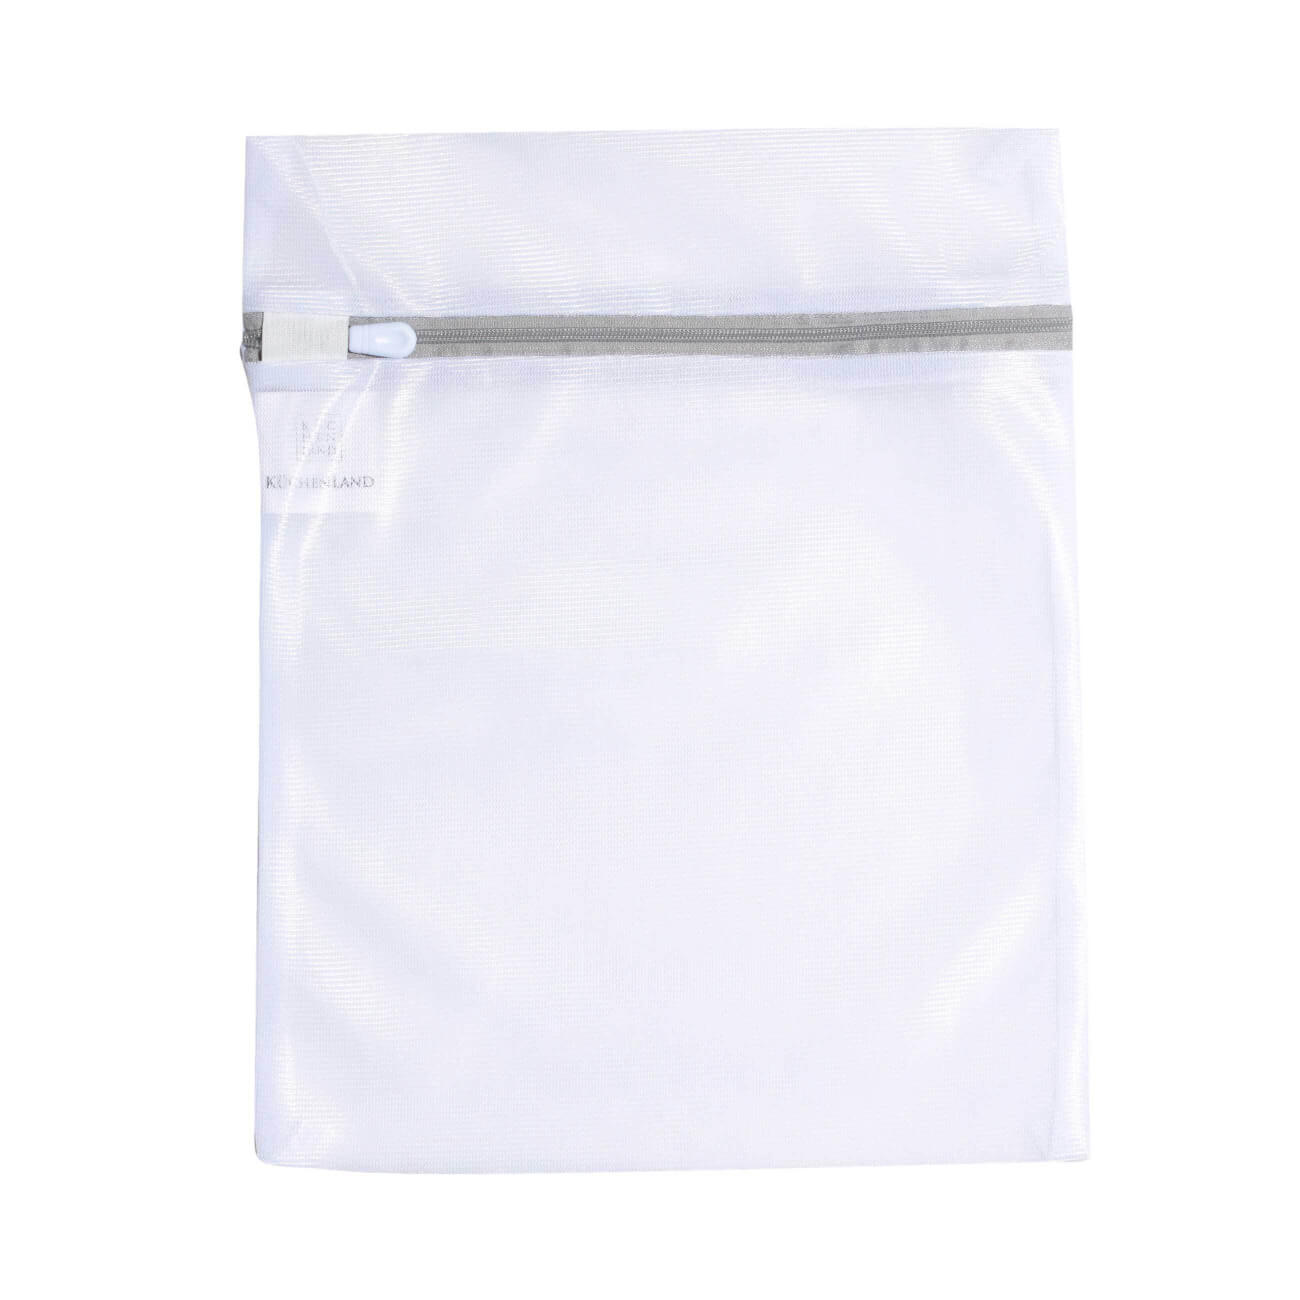 Мешок для стирки нижнего белья, 25х30 см, полиэстер, бело-серый, Safety plus мешок для стирки нижнего белья eurohouse